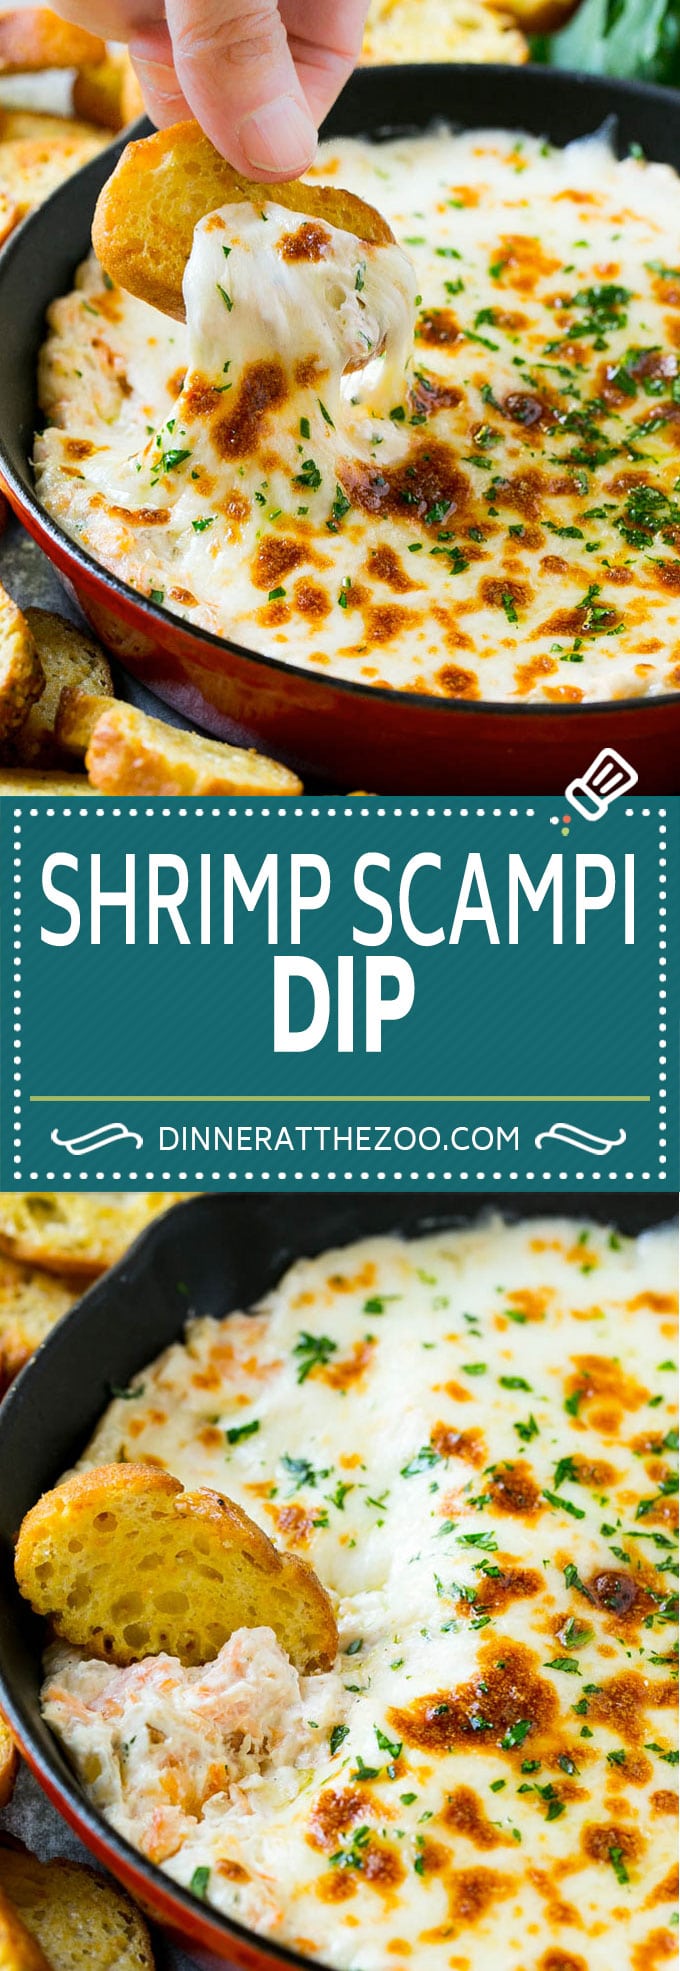 Shrimp Scampi Dip Recipe | Hot Shrimp Dip | Shrimp Dip Recipe #shrimp #dip #appetizer #cheese #seafood #dinneratthezoo